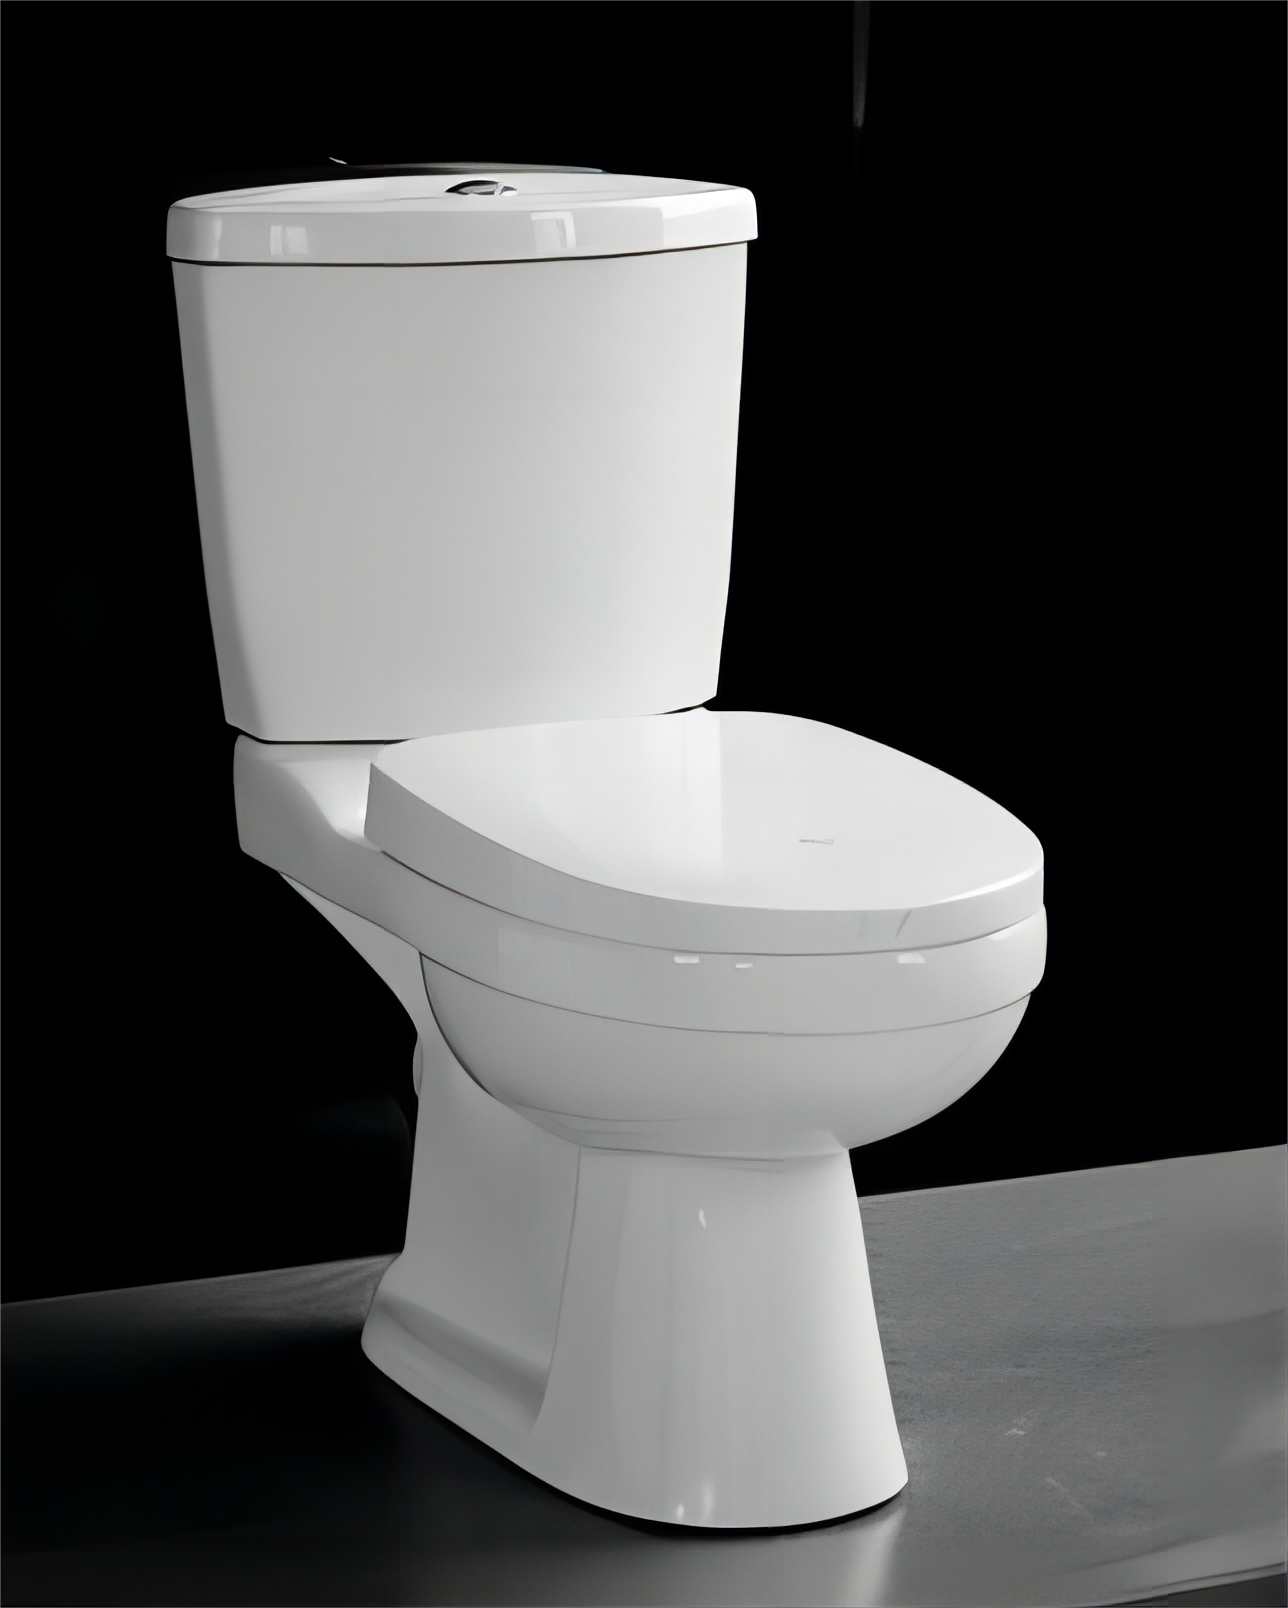 qu'est-ce qu'une toilette intelligente Conceptions autonettoyantes Toilettes intelligentes électroniques modernes